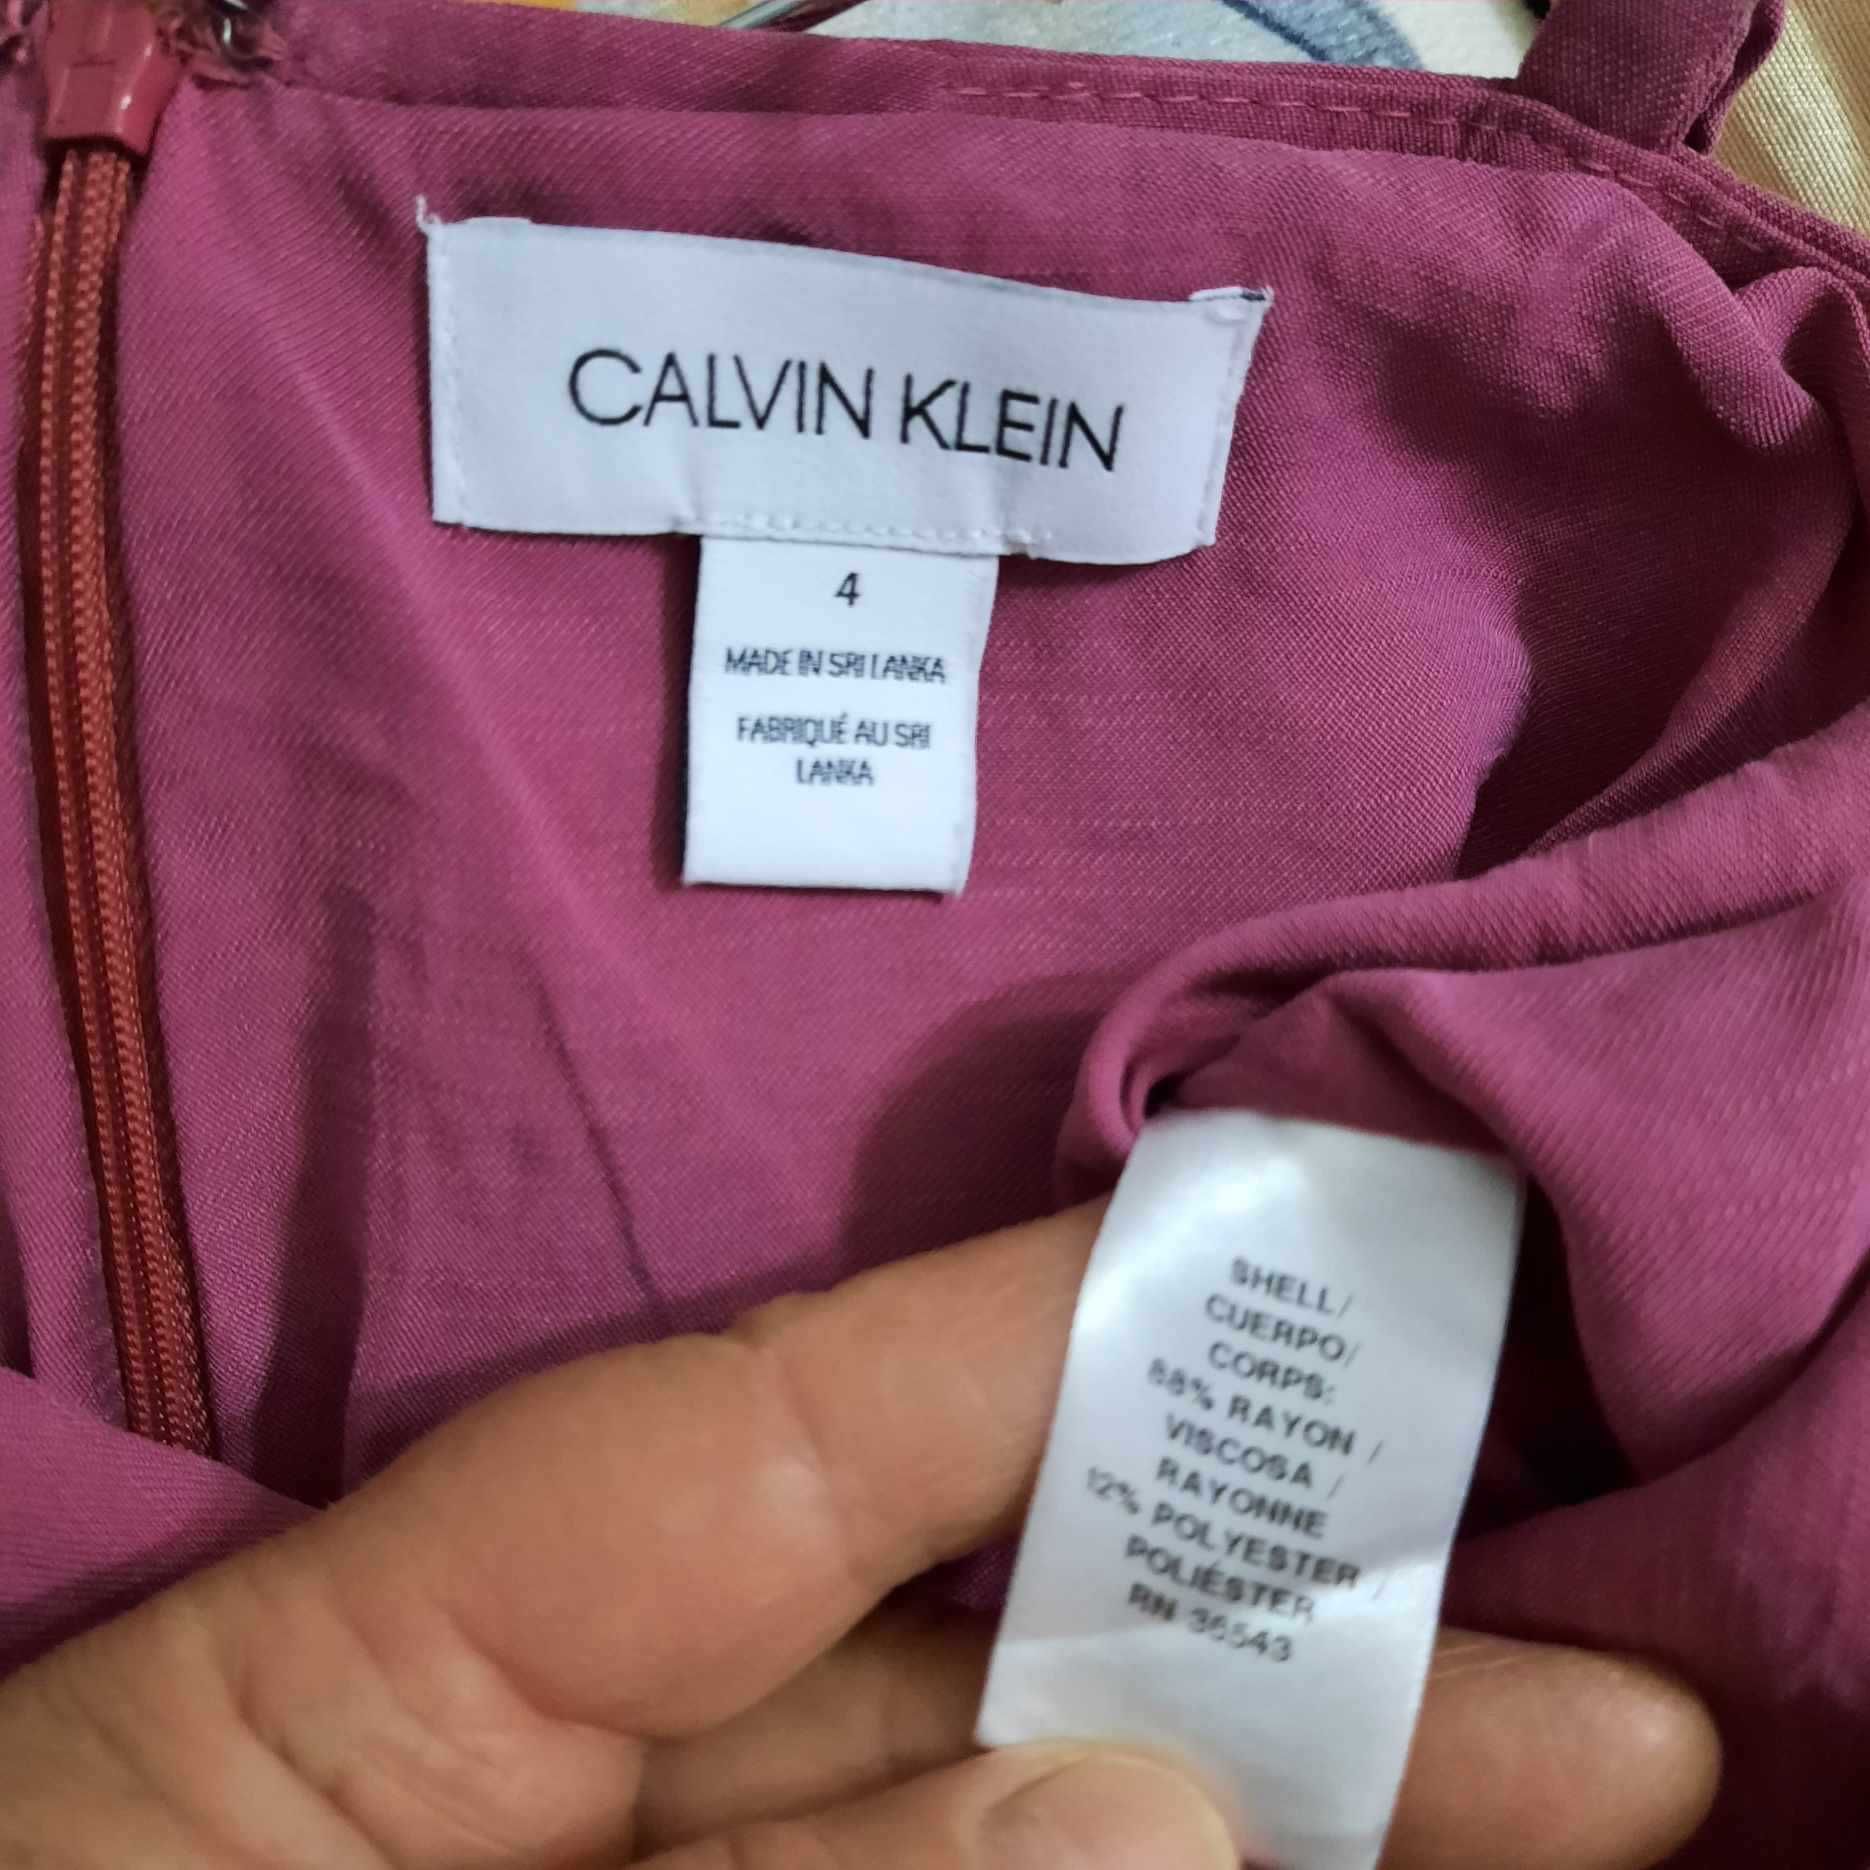 Salopeta Calvin Klein mar.4